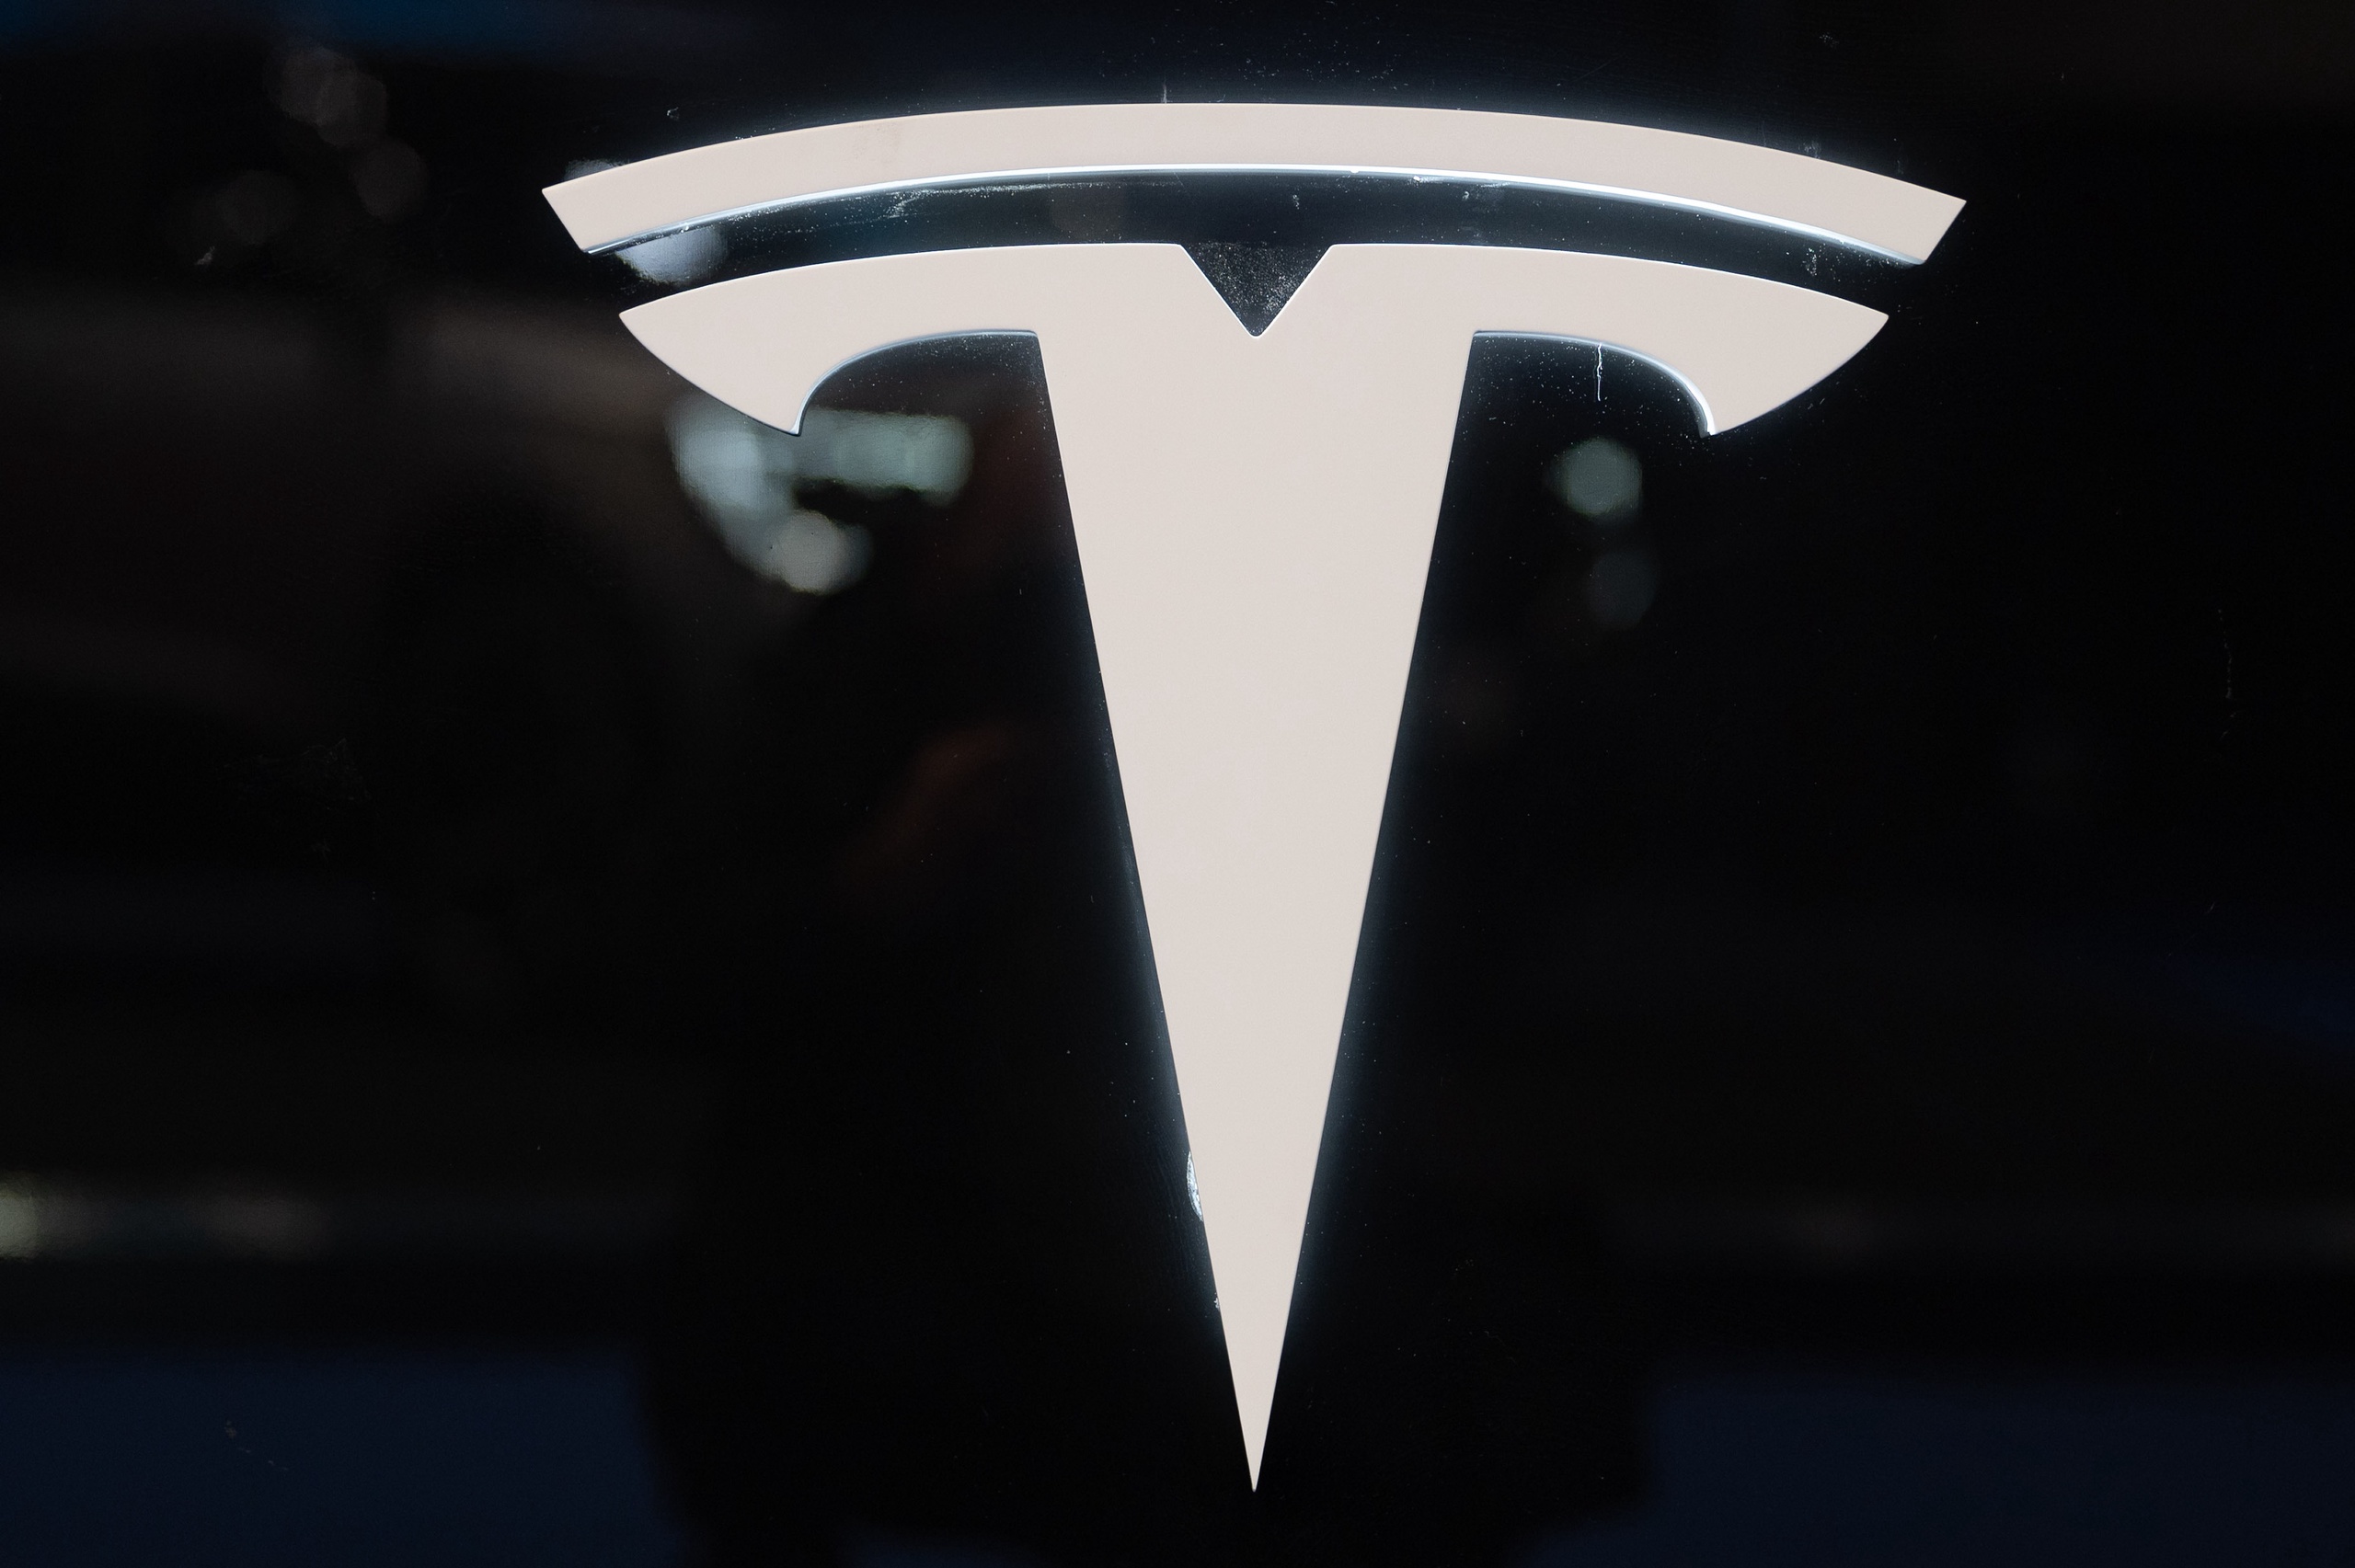 De Autoriteit Persoonsgegevens informatie over een mogelijk enorm datalek bij Tesla gekregen. 